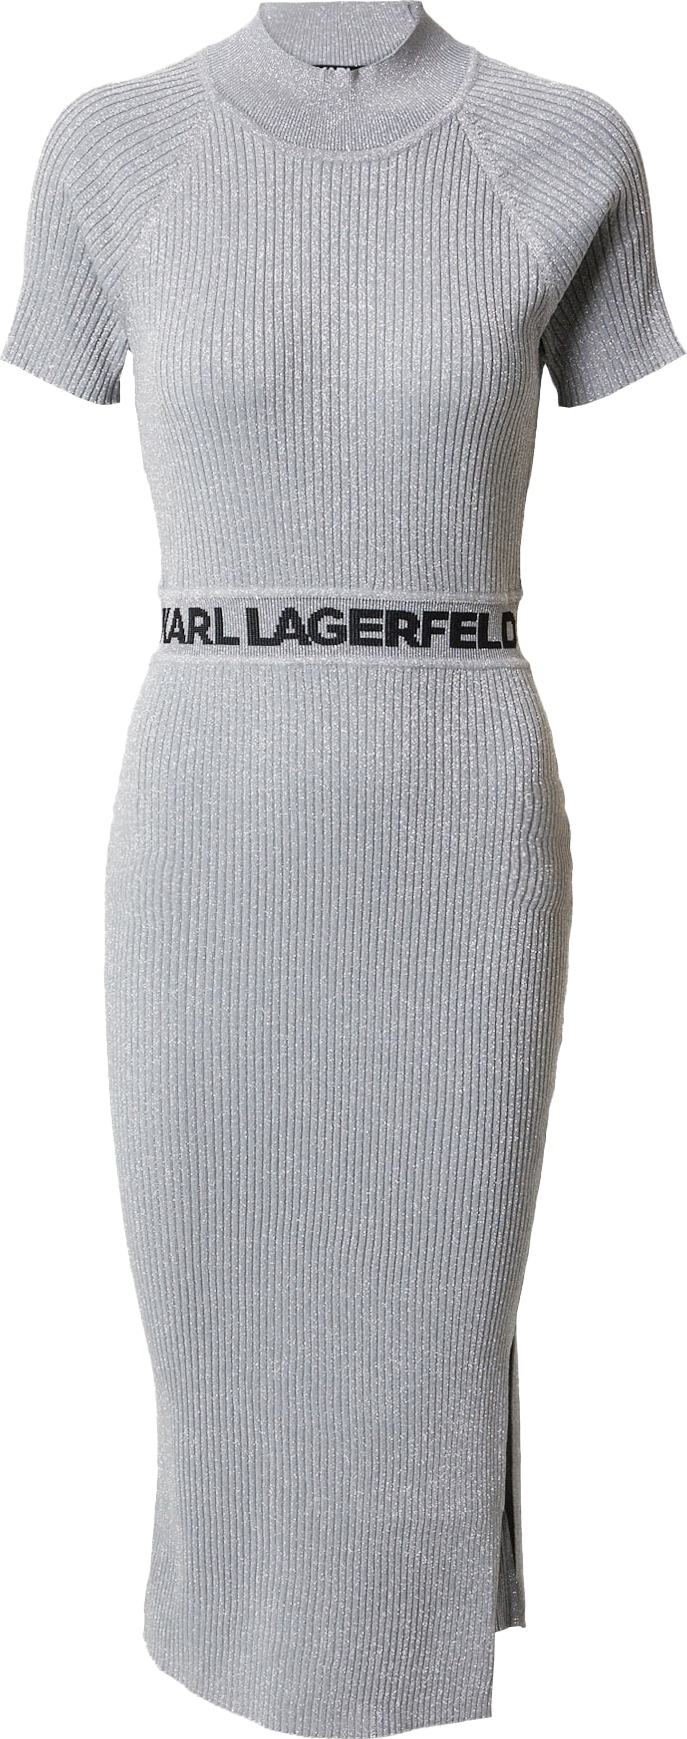 Karl Lagerfeld Úpletové šaty černá / stříbrná